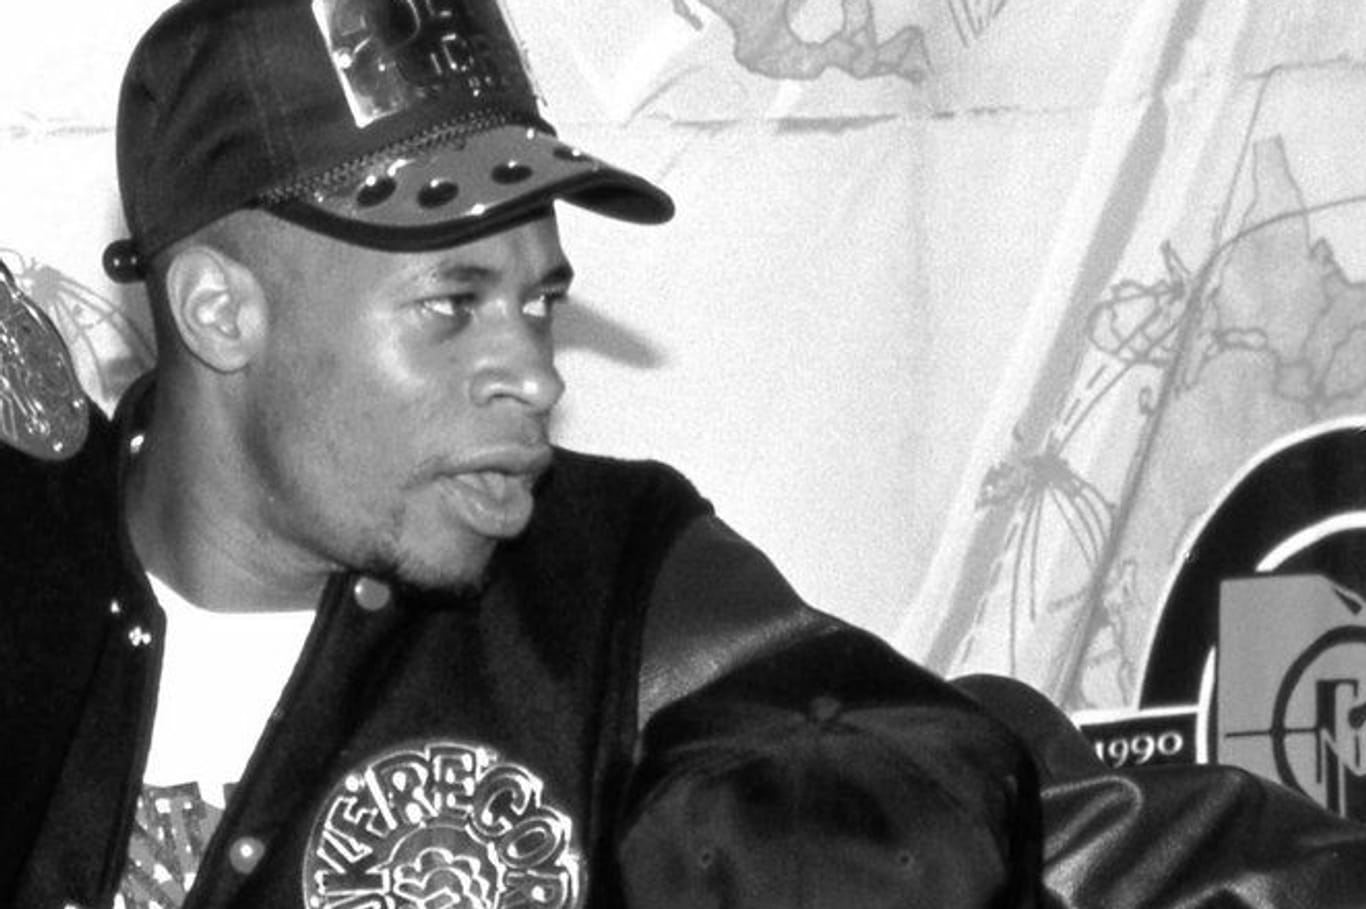 Rapper Brother Marquis ist im Alter von 58 Jahre verstorben.